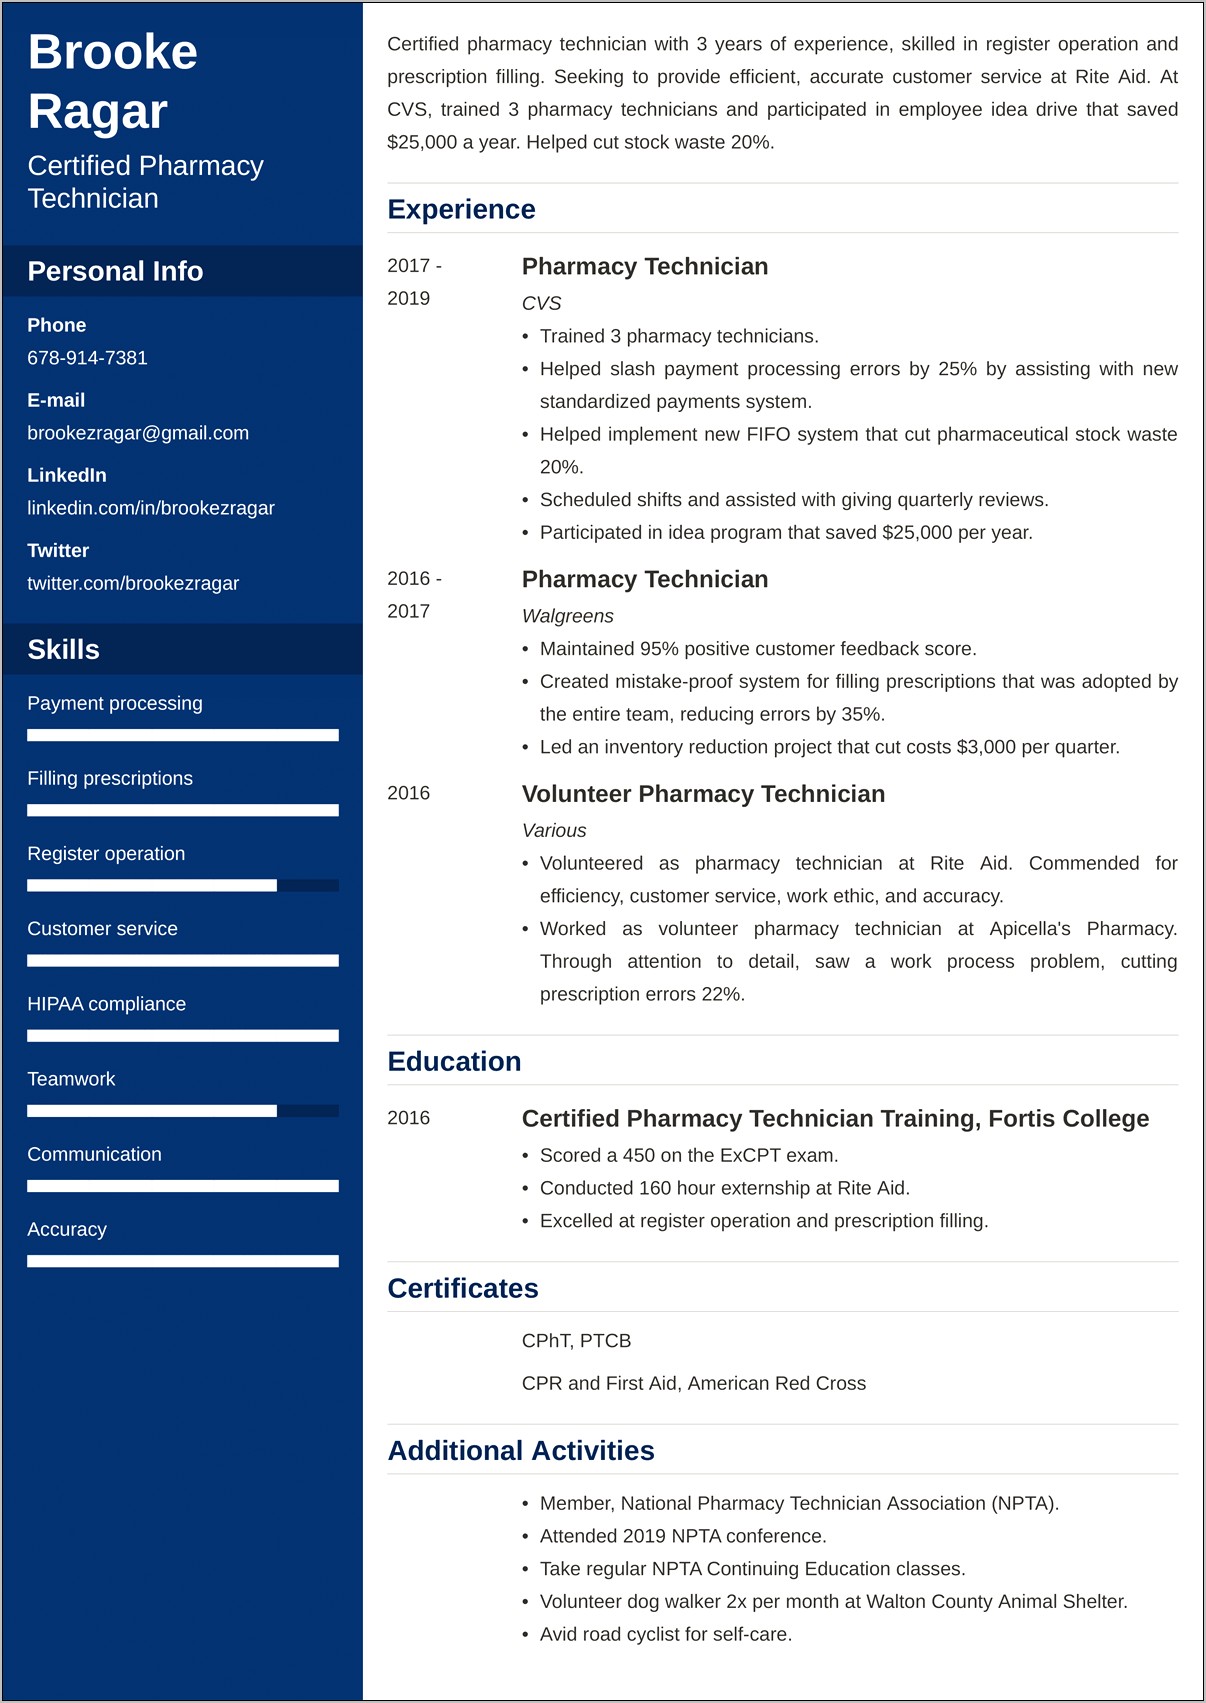 Resume Skills List For Pharmacy Technician